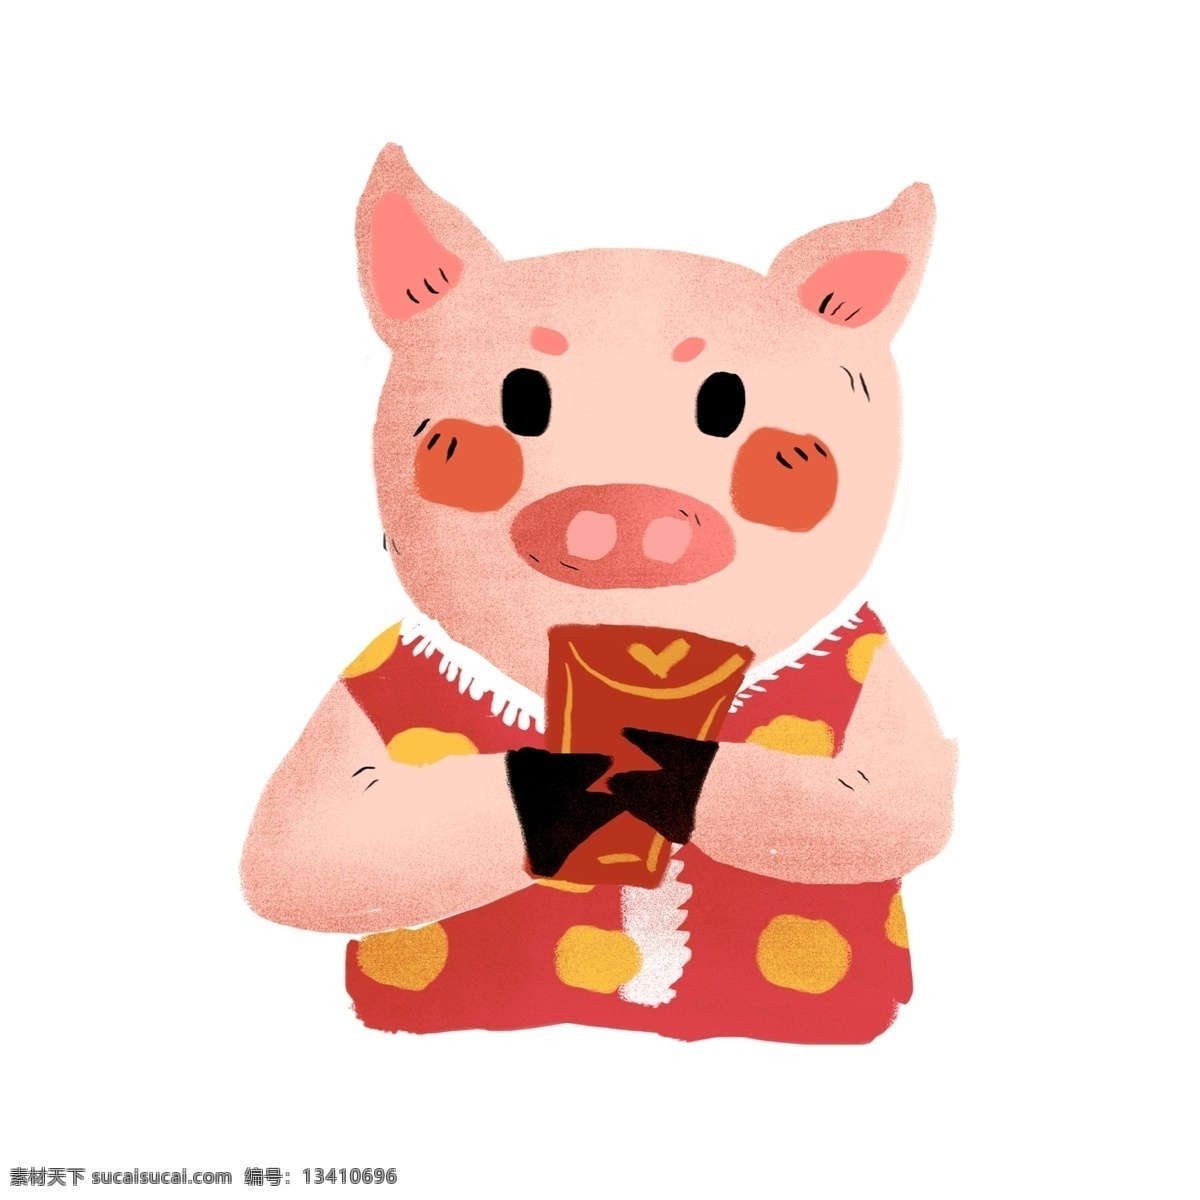 春节 红包 拜年 小 猪 卡通 可爱 动物 小猪 穿花衣 过年 2019年 猪年元素 小猪形象 猪年形象